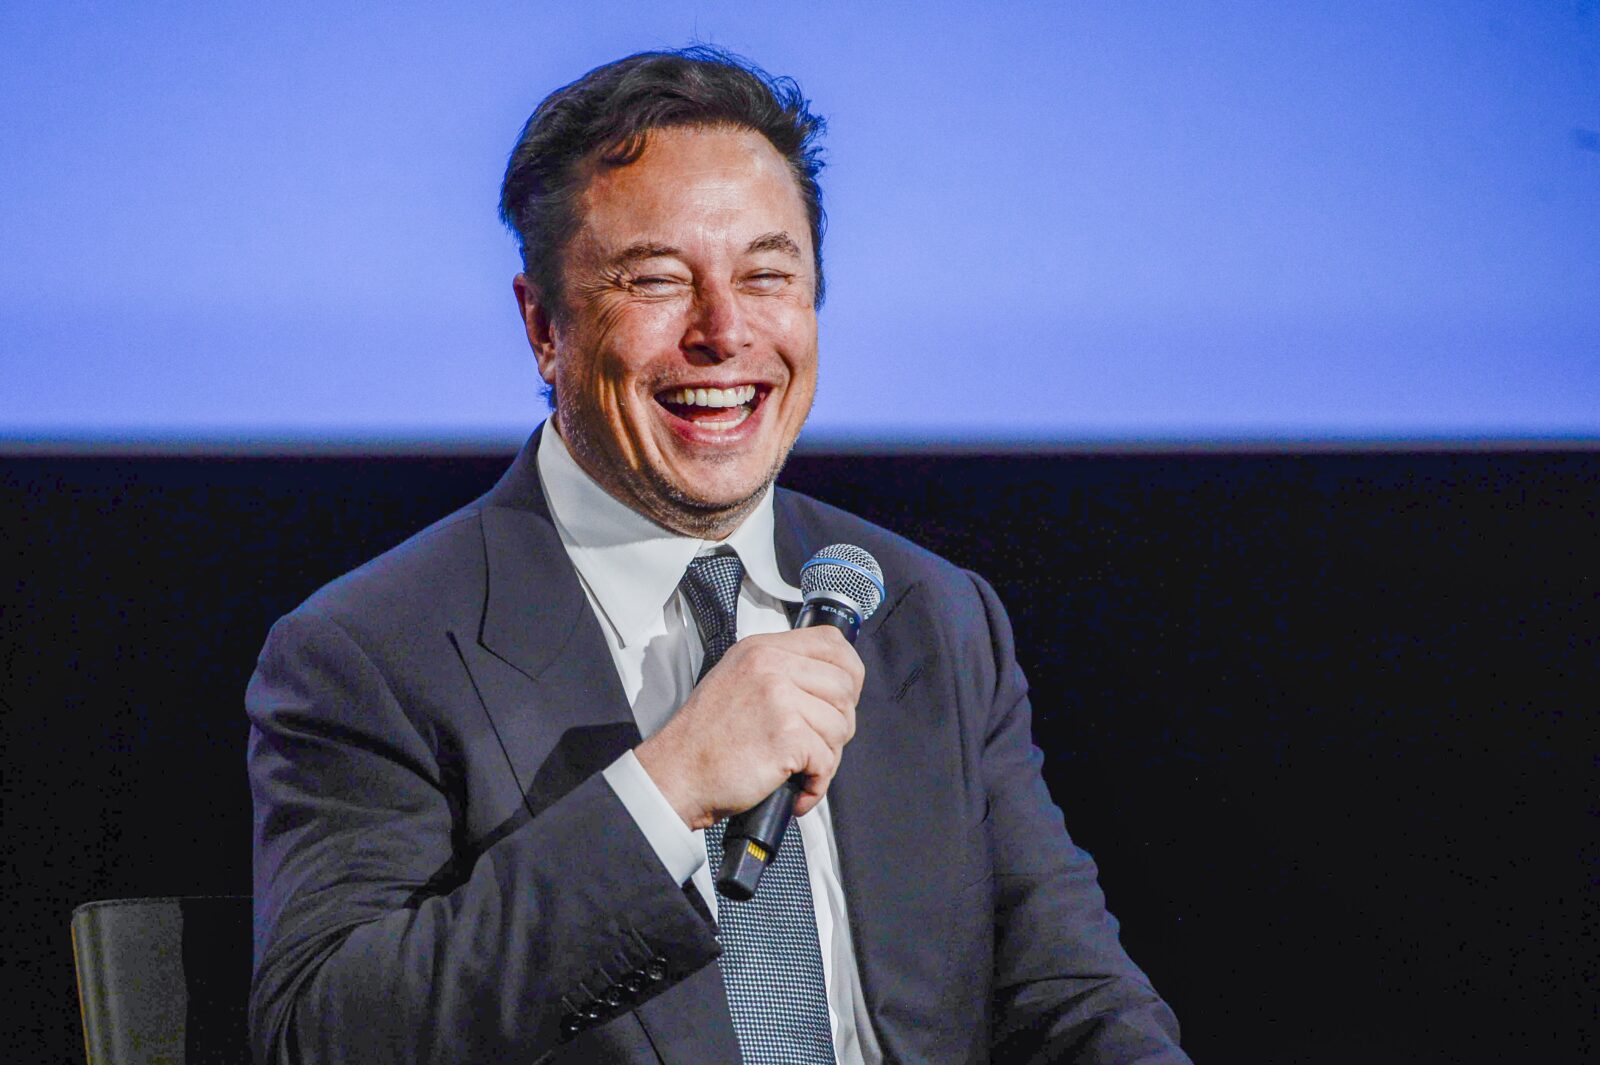 Elon Musk dreigt met zware concurrentie iPhone en Android smartphones